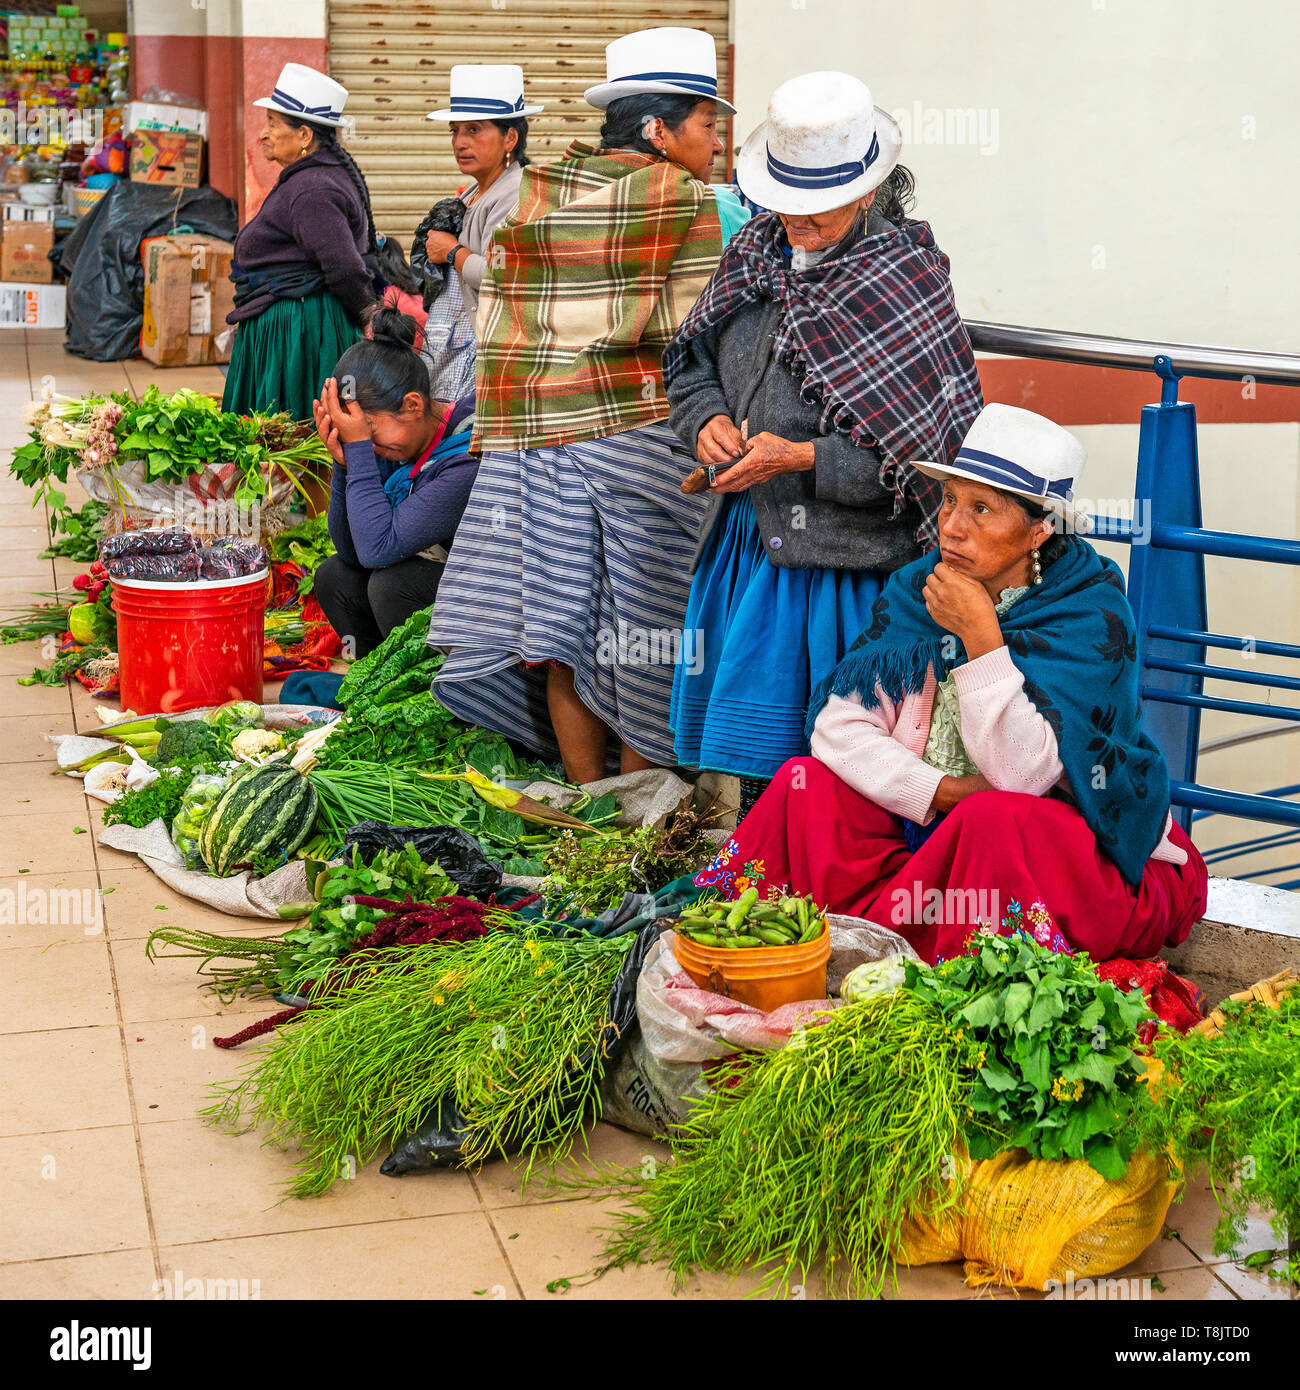 Indigenen ecuadorianischen Verkauf Frauen in traditioneller Kleidung und Panama Hüte Gemüse Verkauf im Innen- lokalen Markt von Cuenca, Ecuador. Stockfoto